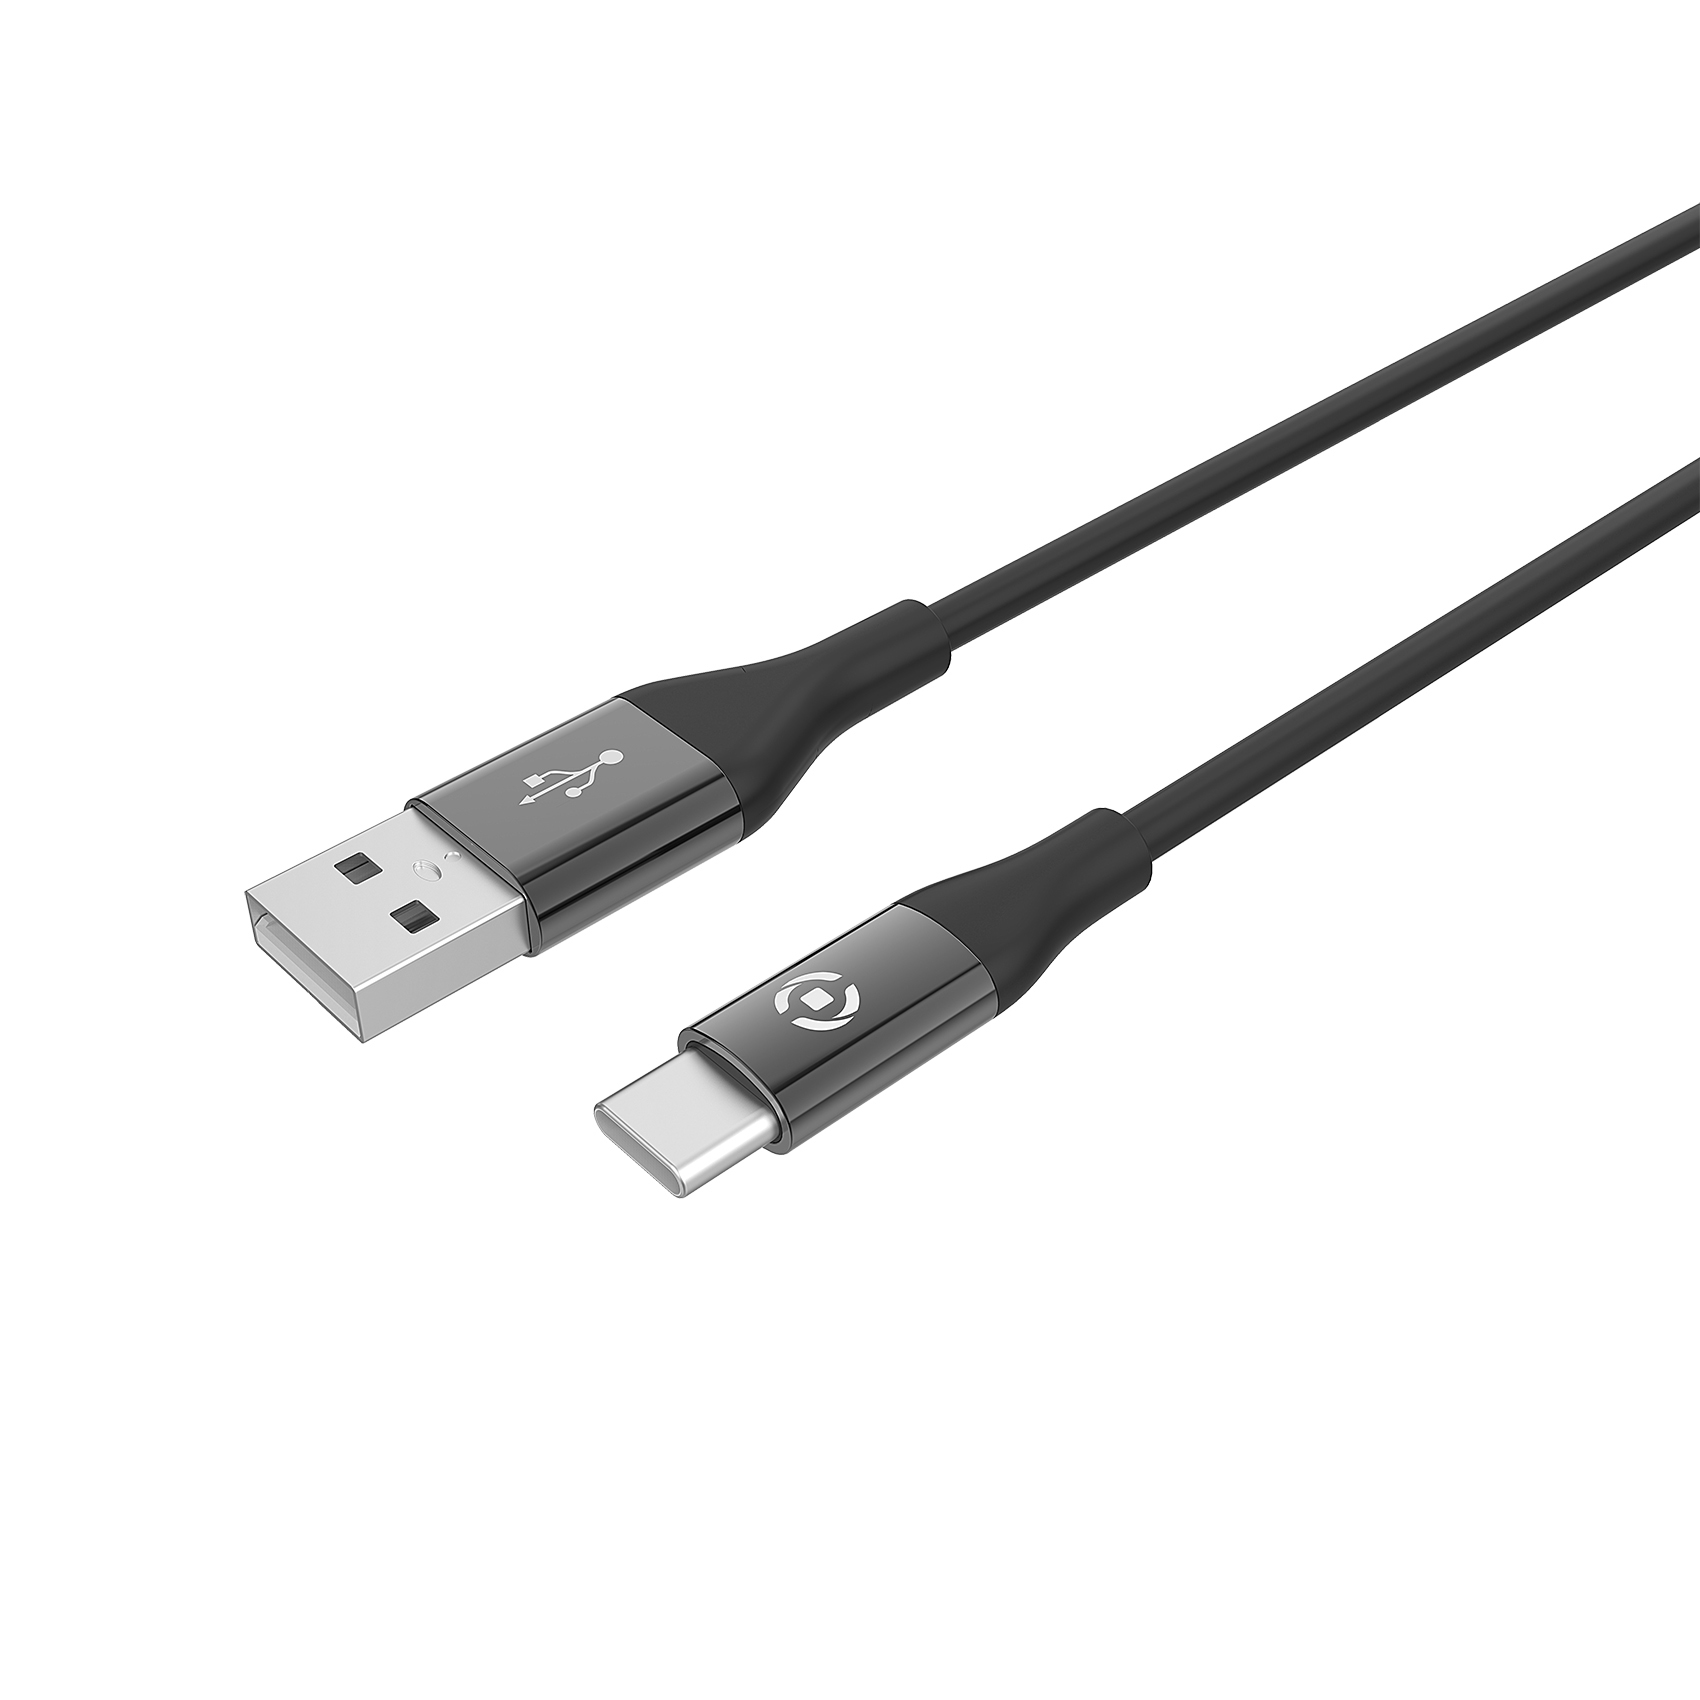 CELLY USB-C kabl za telefon u CRNOJ boji slika 1